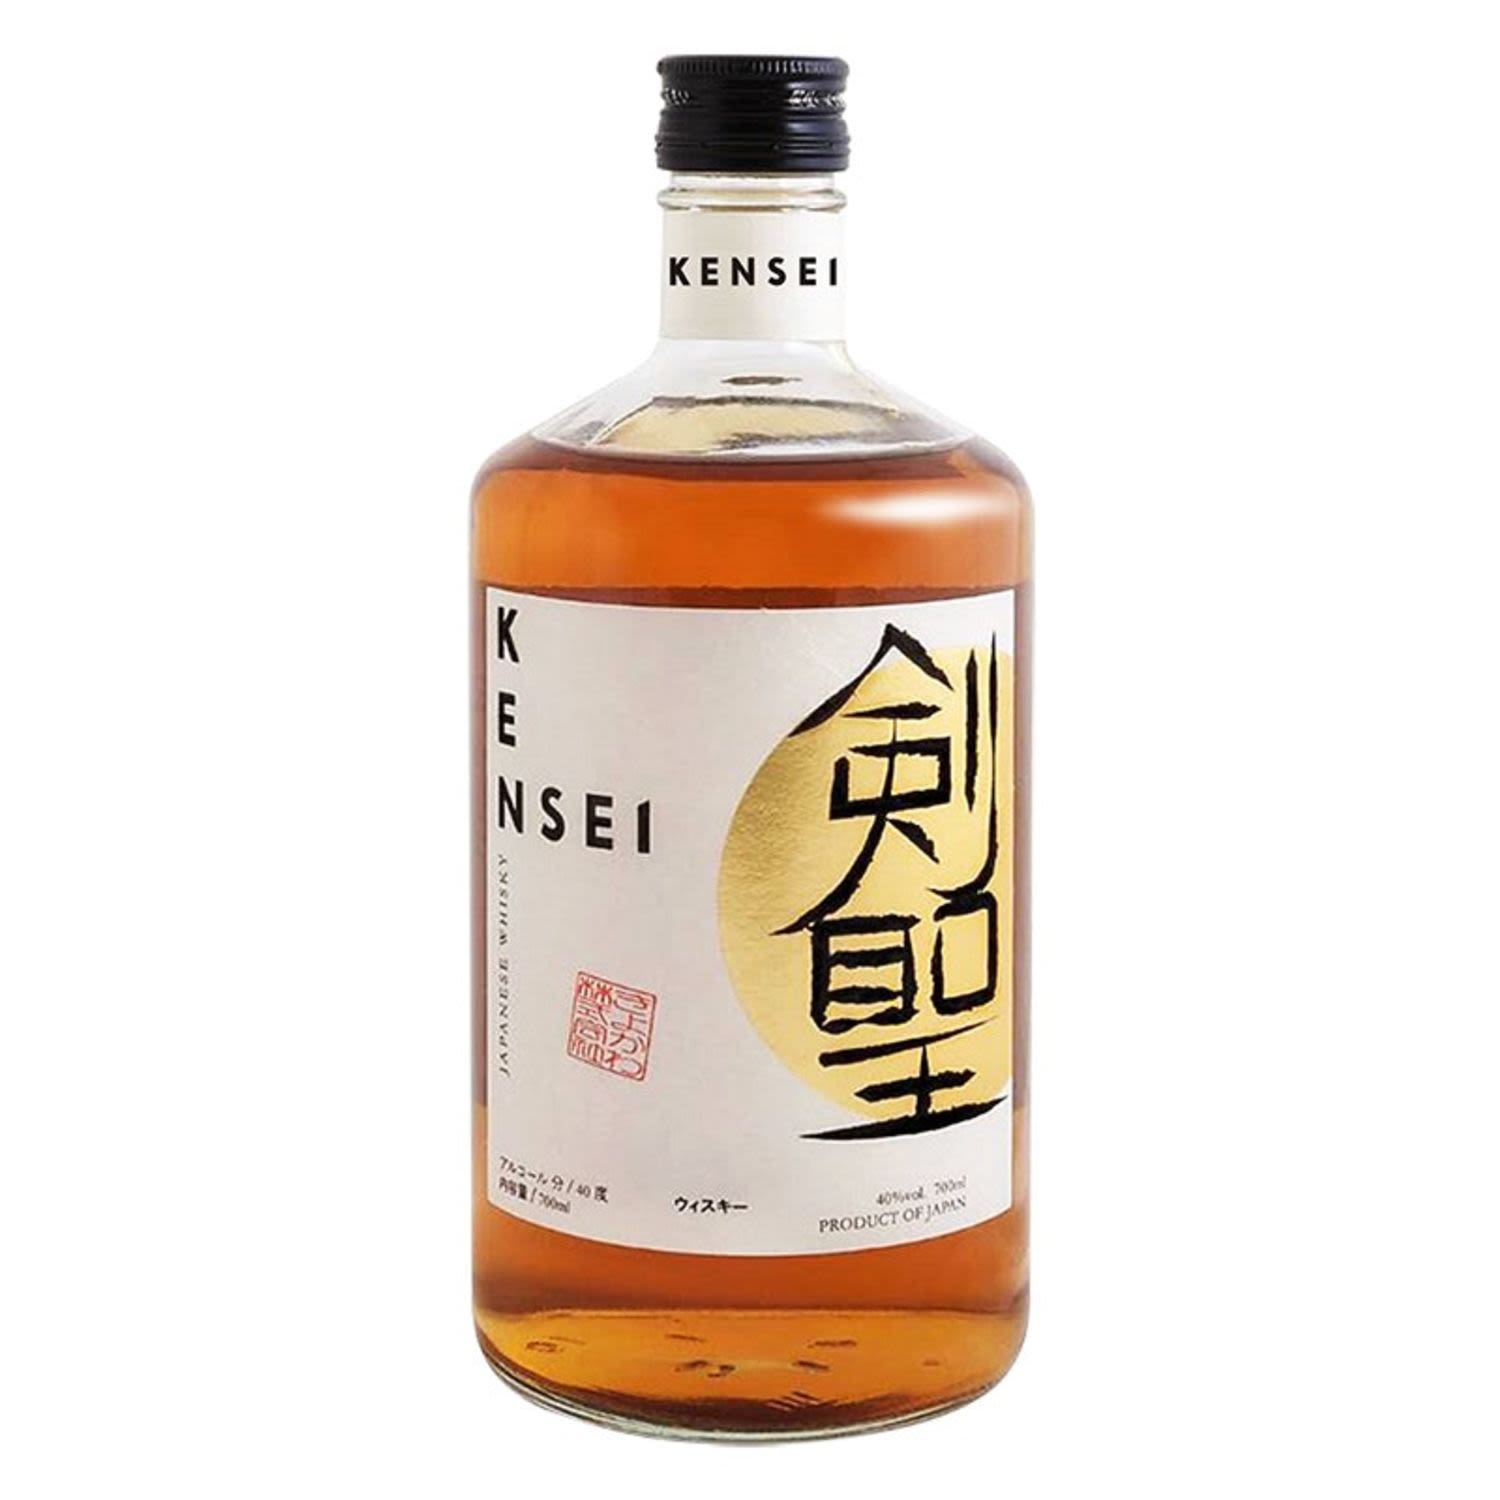 Kensei Japanese Whisky 700mL Bottle